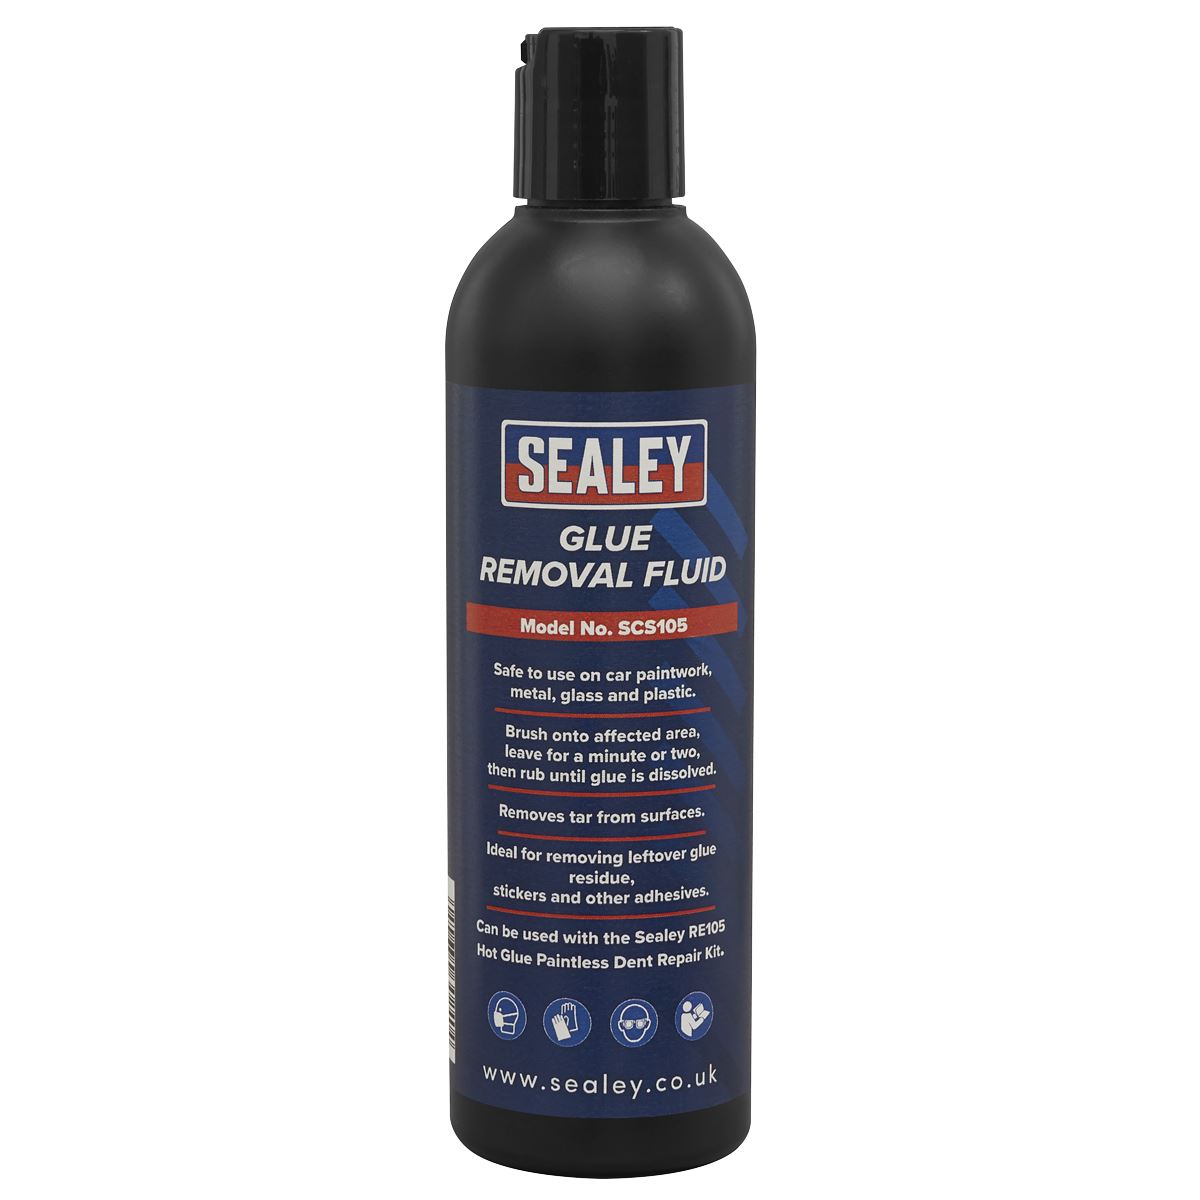 Sealey Glue Removal Fluid 200ml